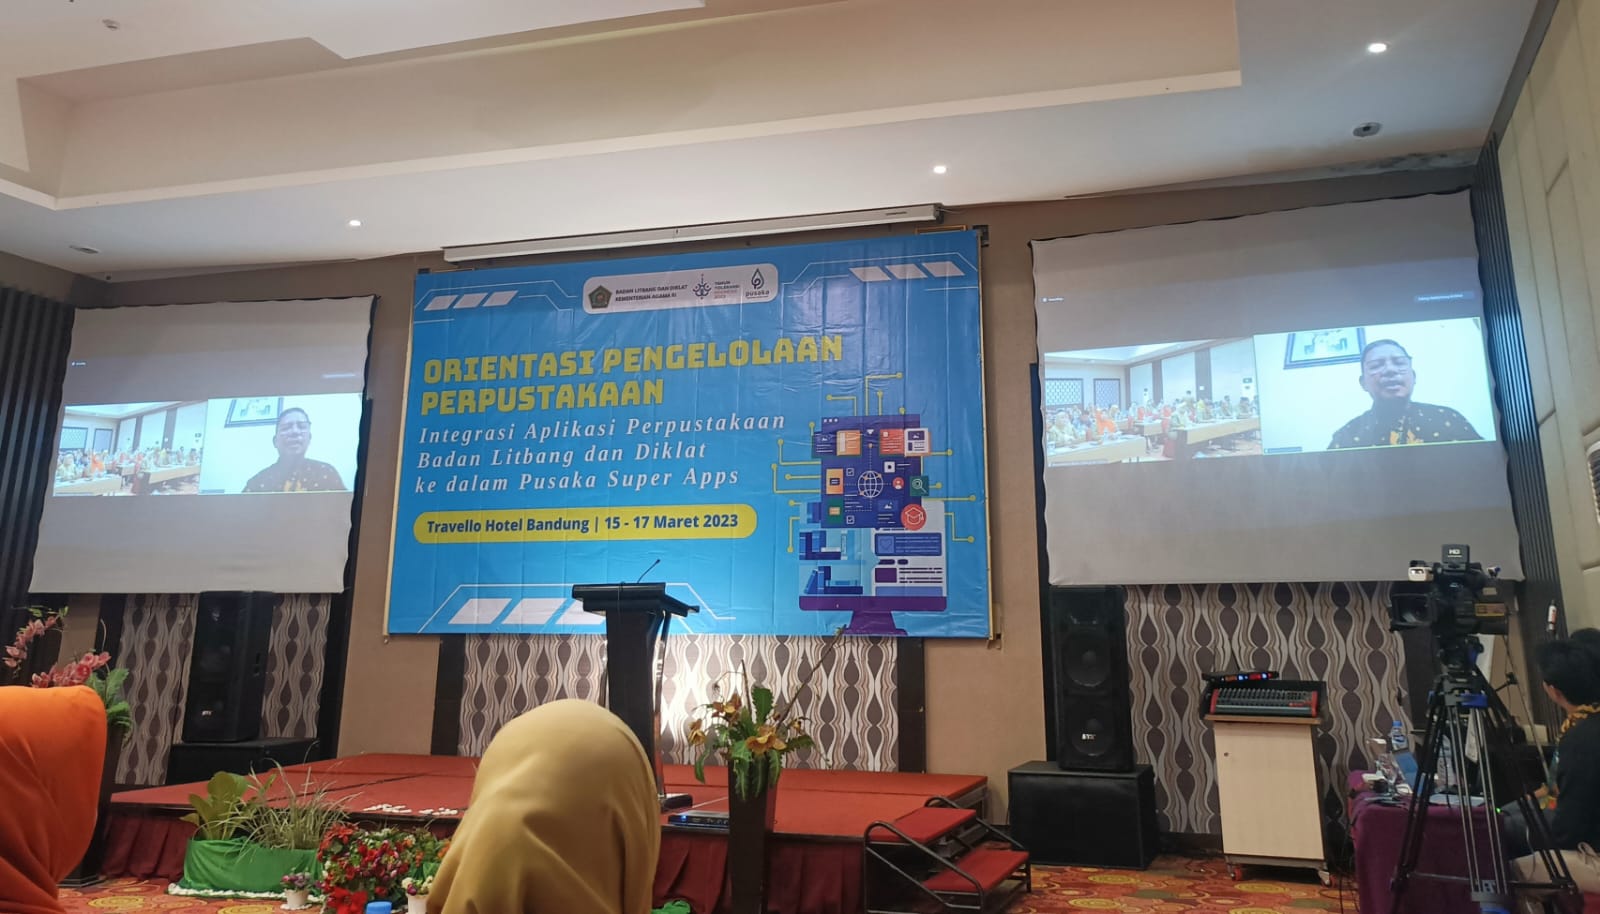 Reformasi Digital Perpustakaan, Langkah Kemenag Sebagai Pusat Informasi Keagamaan di Indonesia